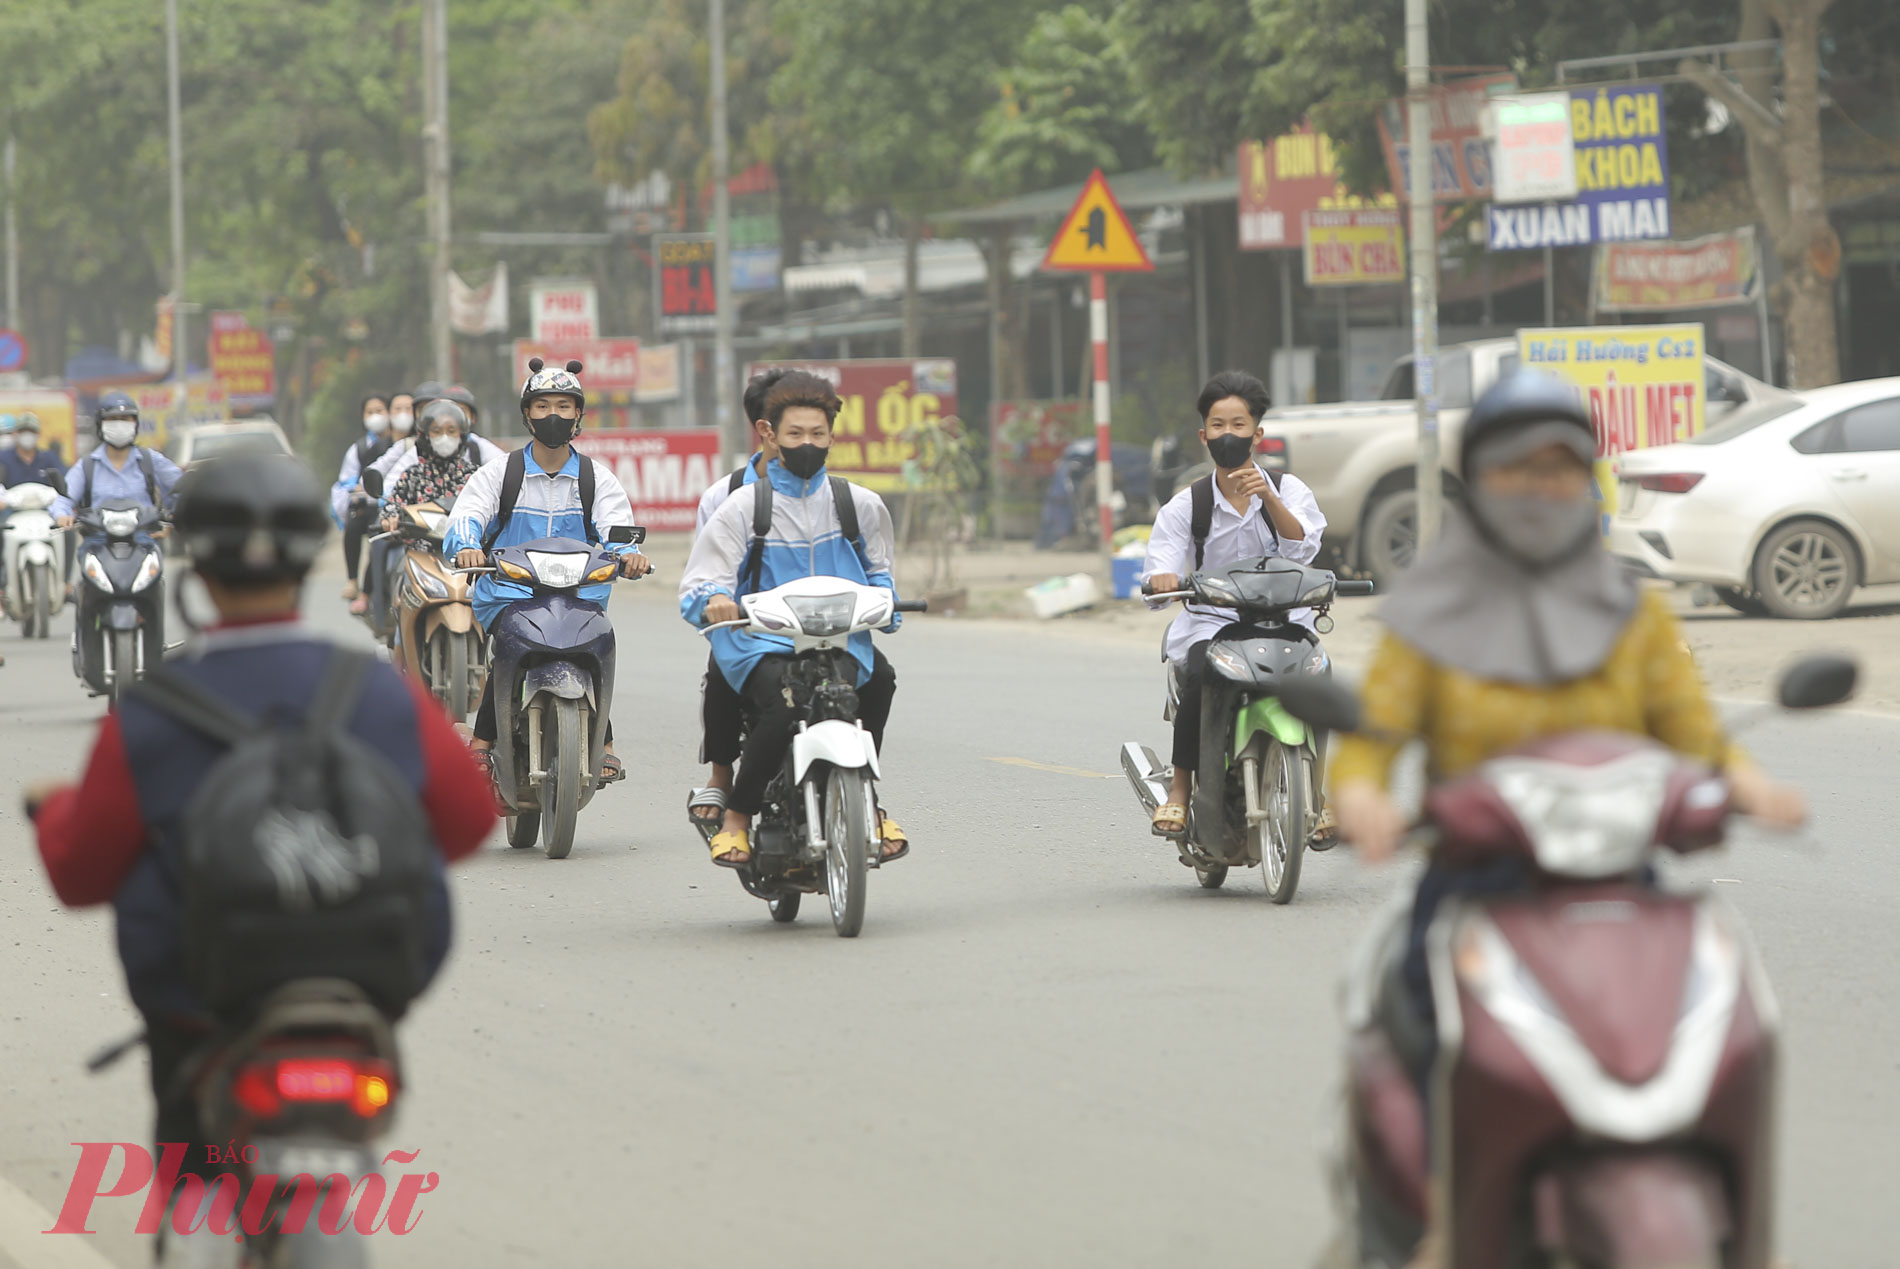 Có mặt tại thị trấn Xuân Mai vào giờ tan học, không khó nhận thấy tình trạng học sinh điều khiển xe máy điện, xe đạp điện không đội mũ bảo hiểm, đi thành hàng hai, hàng ba trên đường.